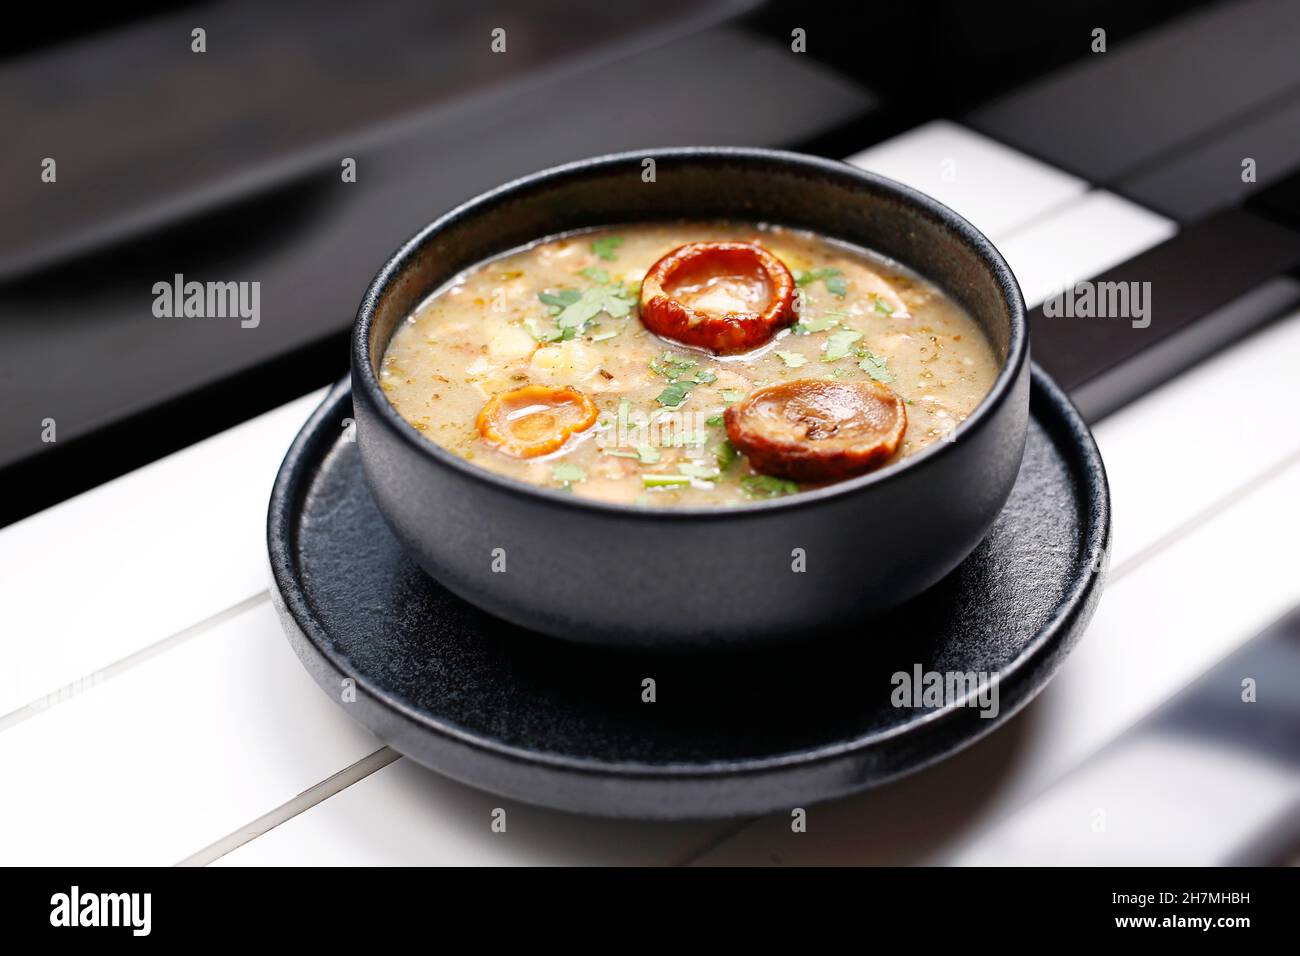 Pilzsuppe. Ein leckeres Gericht.kulinarische Fotografie. Vorschlag, das Gericht zu servieren. Zum Mitnehmen, Diätbox. Appetitliches Fertiggericht zum Einwegnehmen Stockfoto